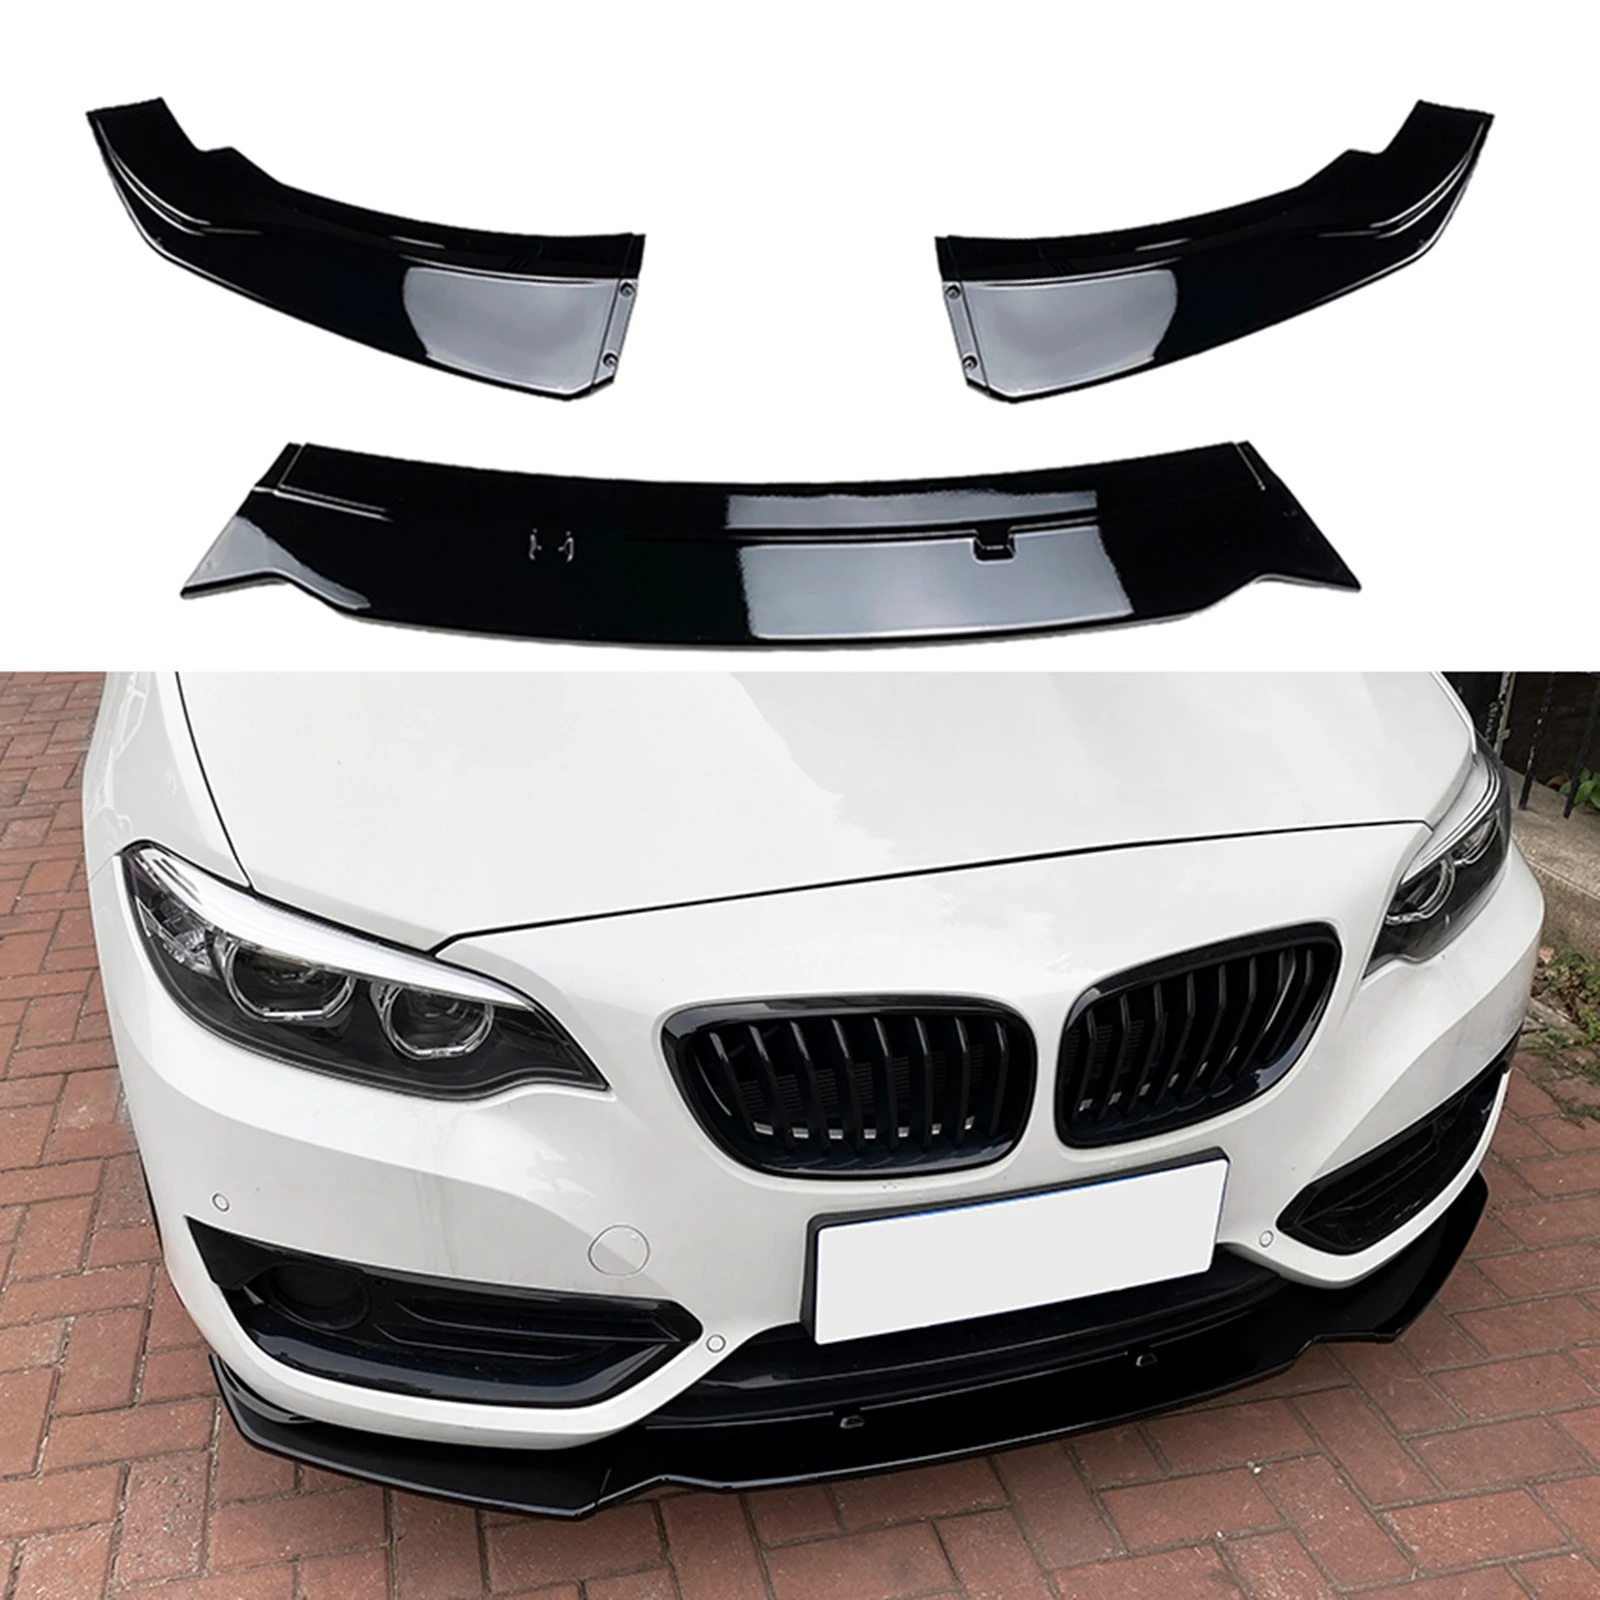 

For BMW 2 Series F22 220i 225i 228i 2014-2019 Base Model Only Glossy Black Car Lower Blade Front Bumper Spoiler Splitter Lip